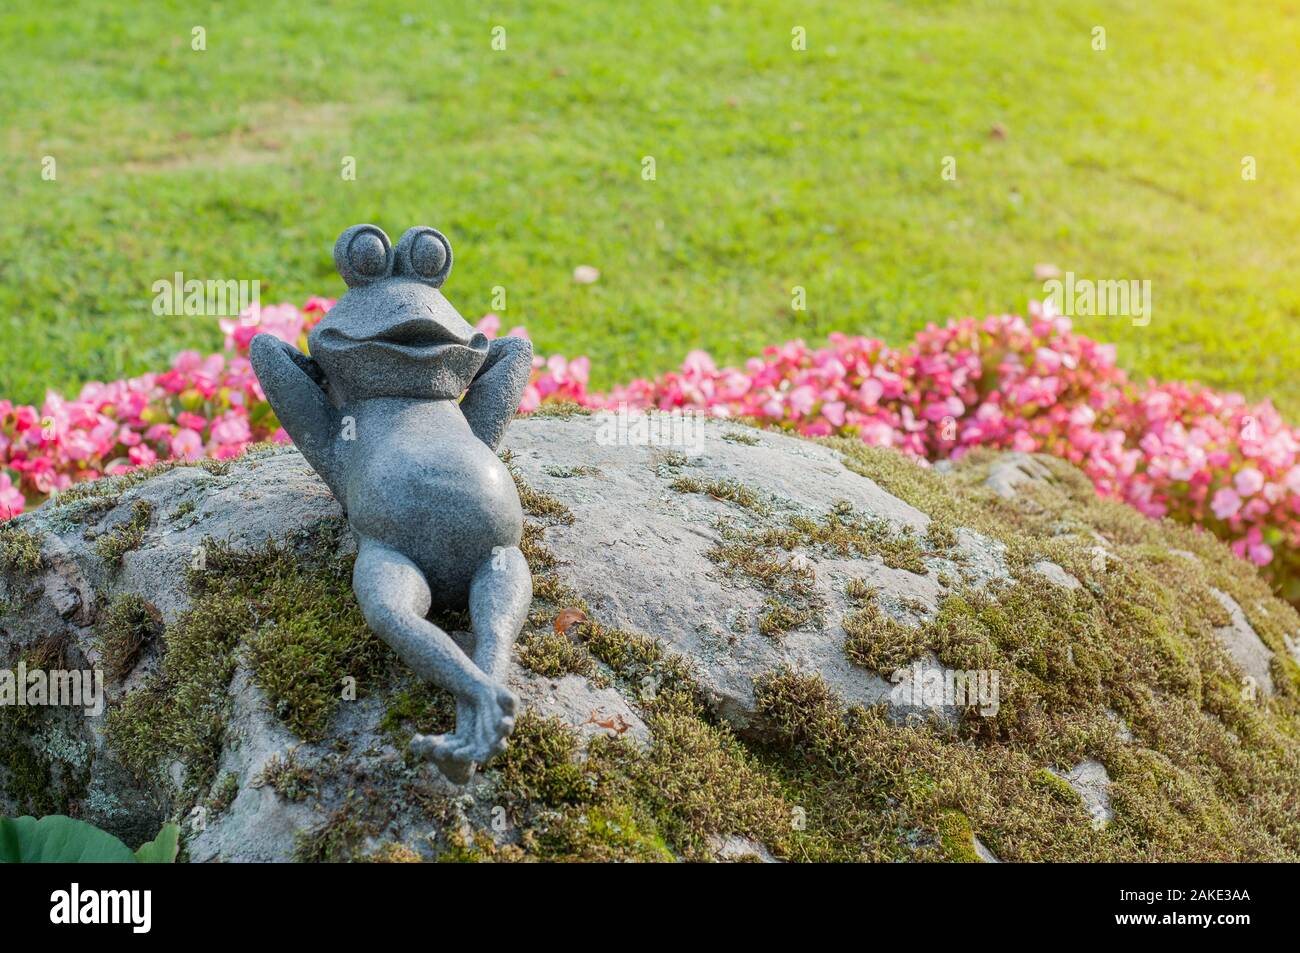 Dekorativer Frosch im Garten. Keramik Green frog Figurine, Frosch sitzen  auf den Steinen Stockfotografie - Alamy